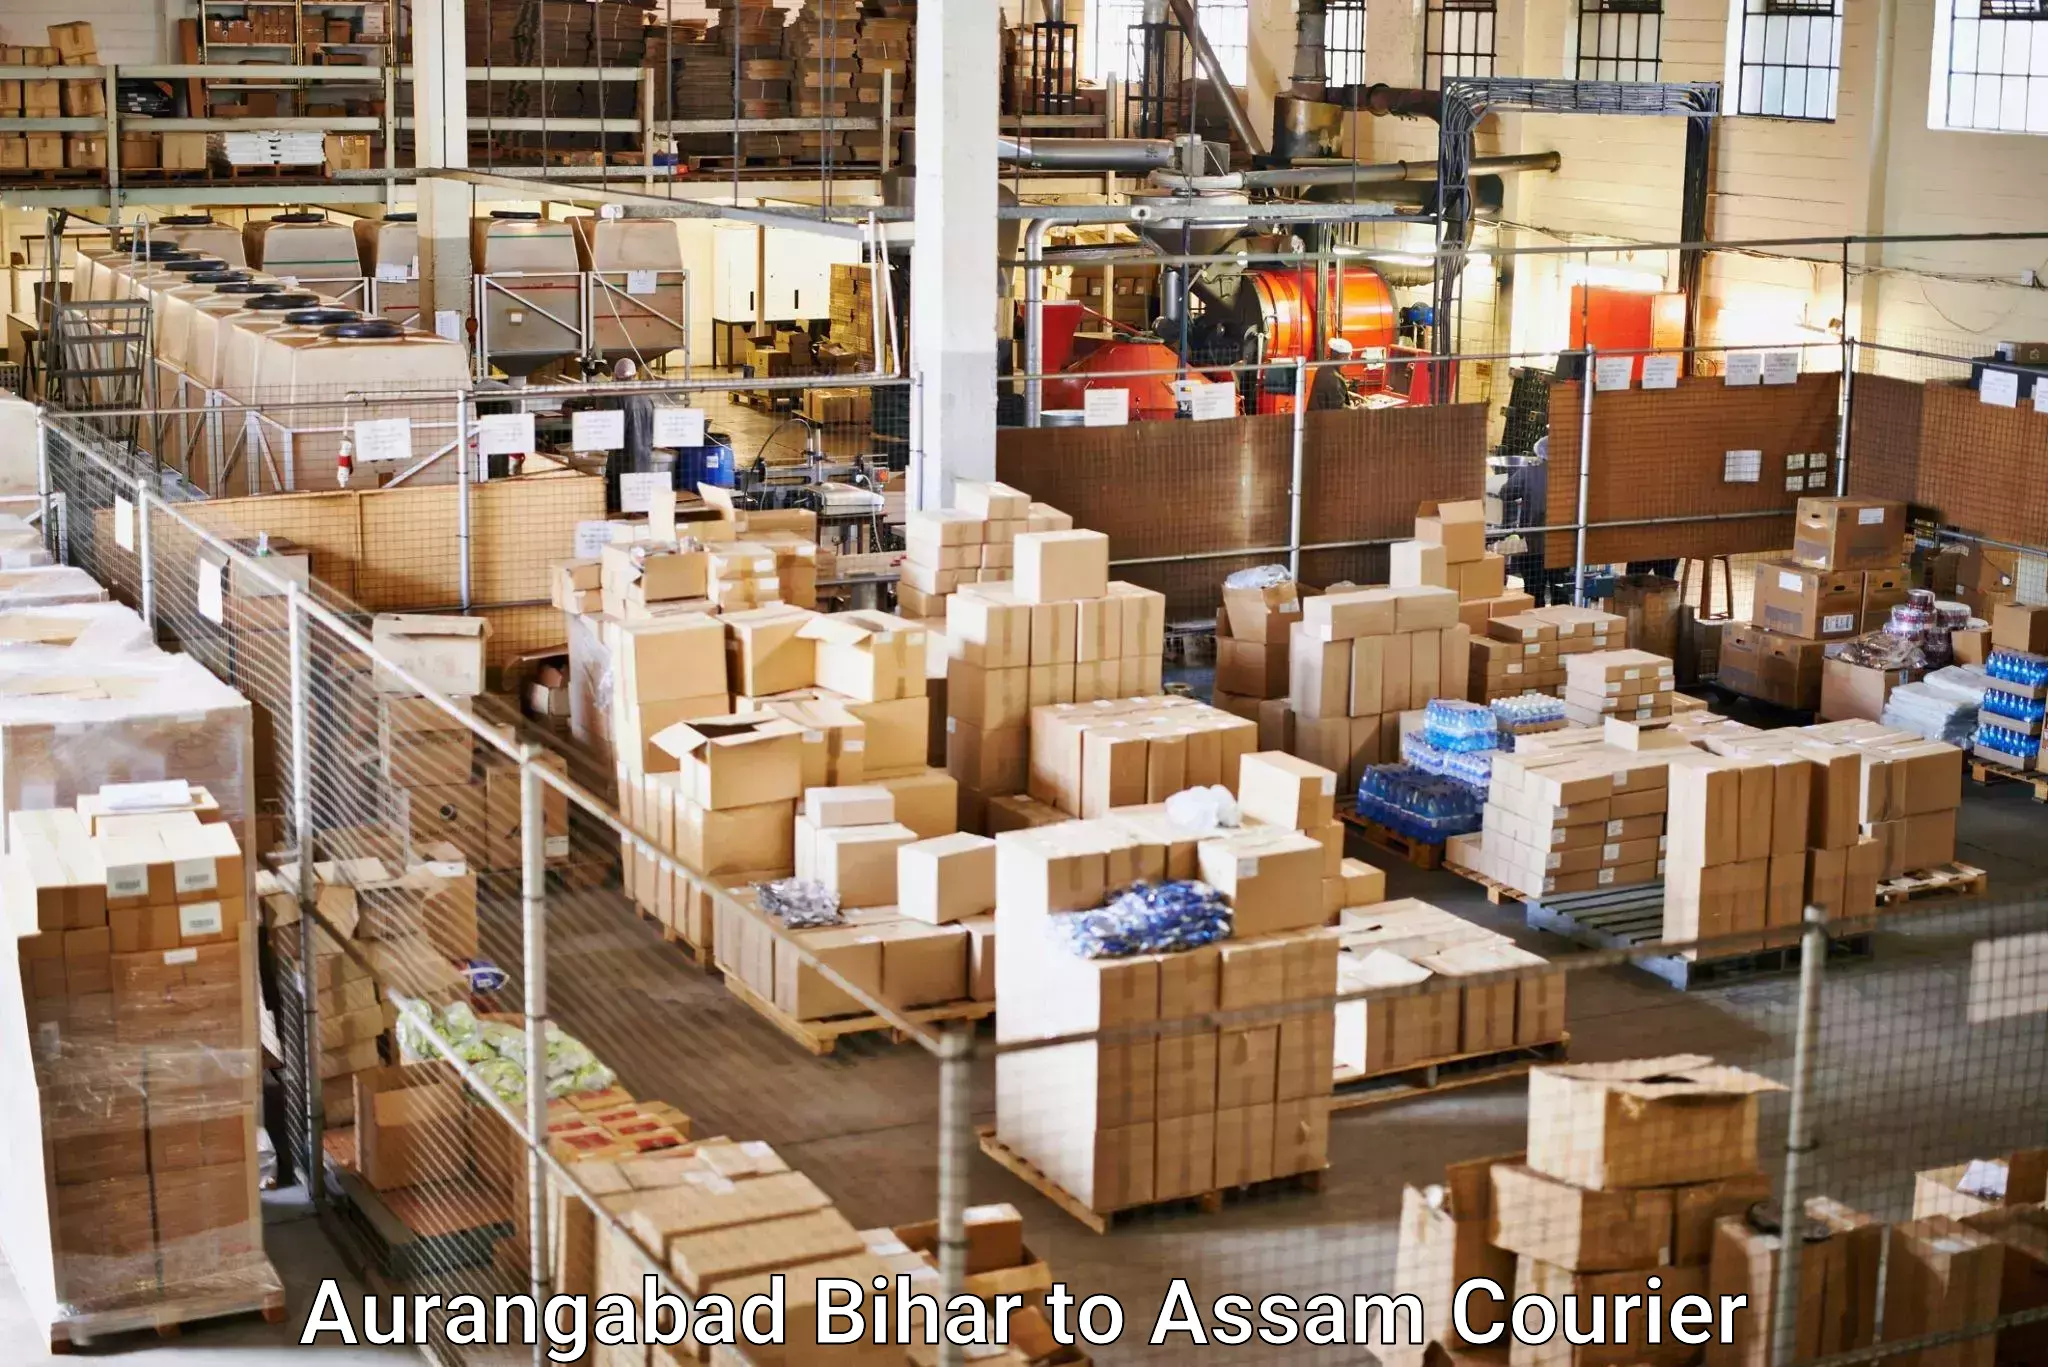 Large package courier Aurangabad Bihar to Udharbond